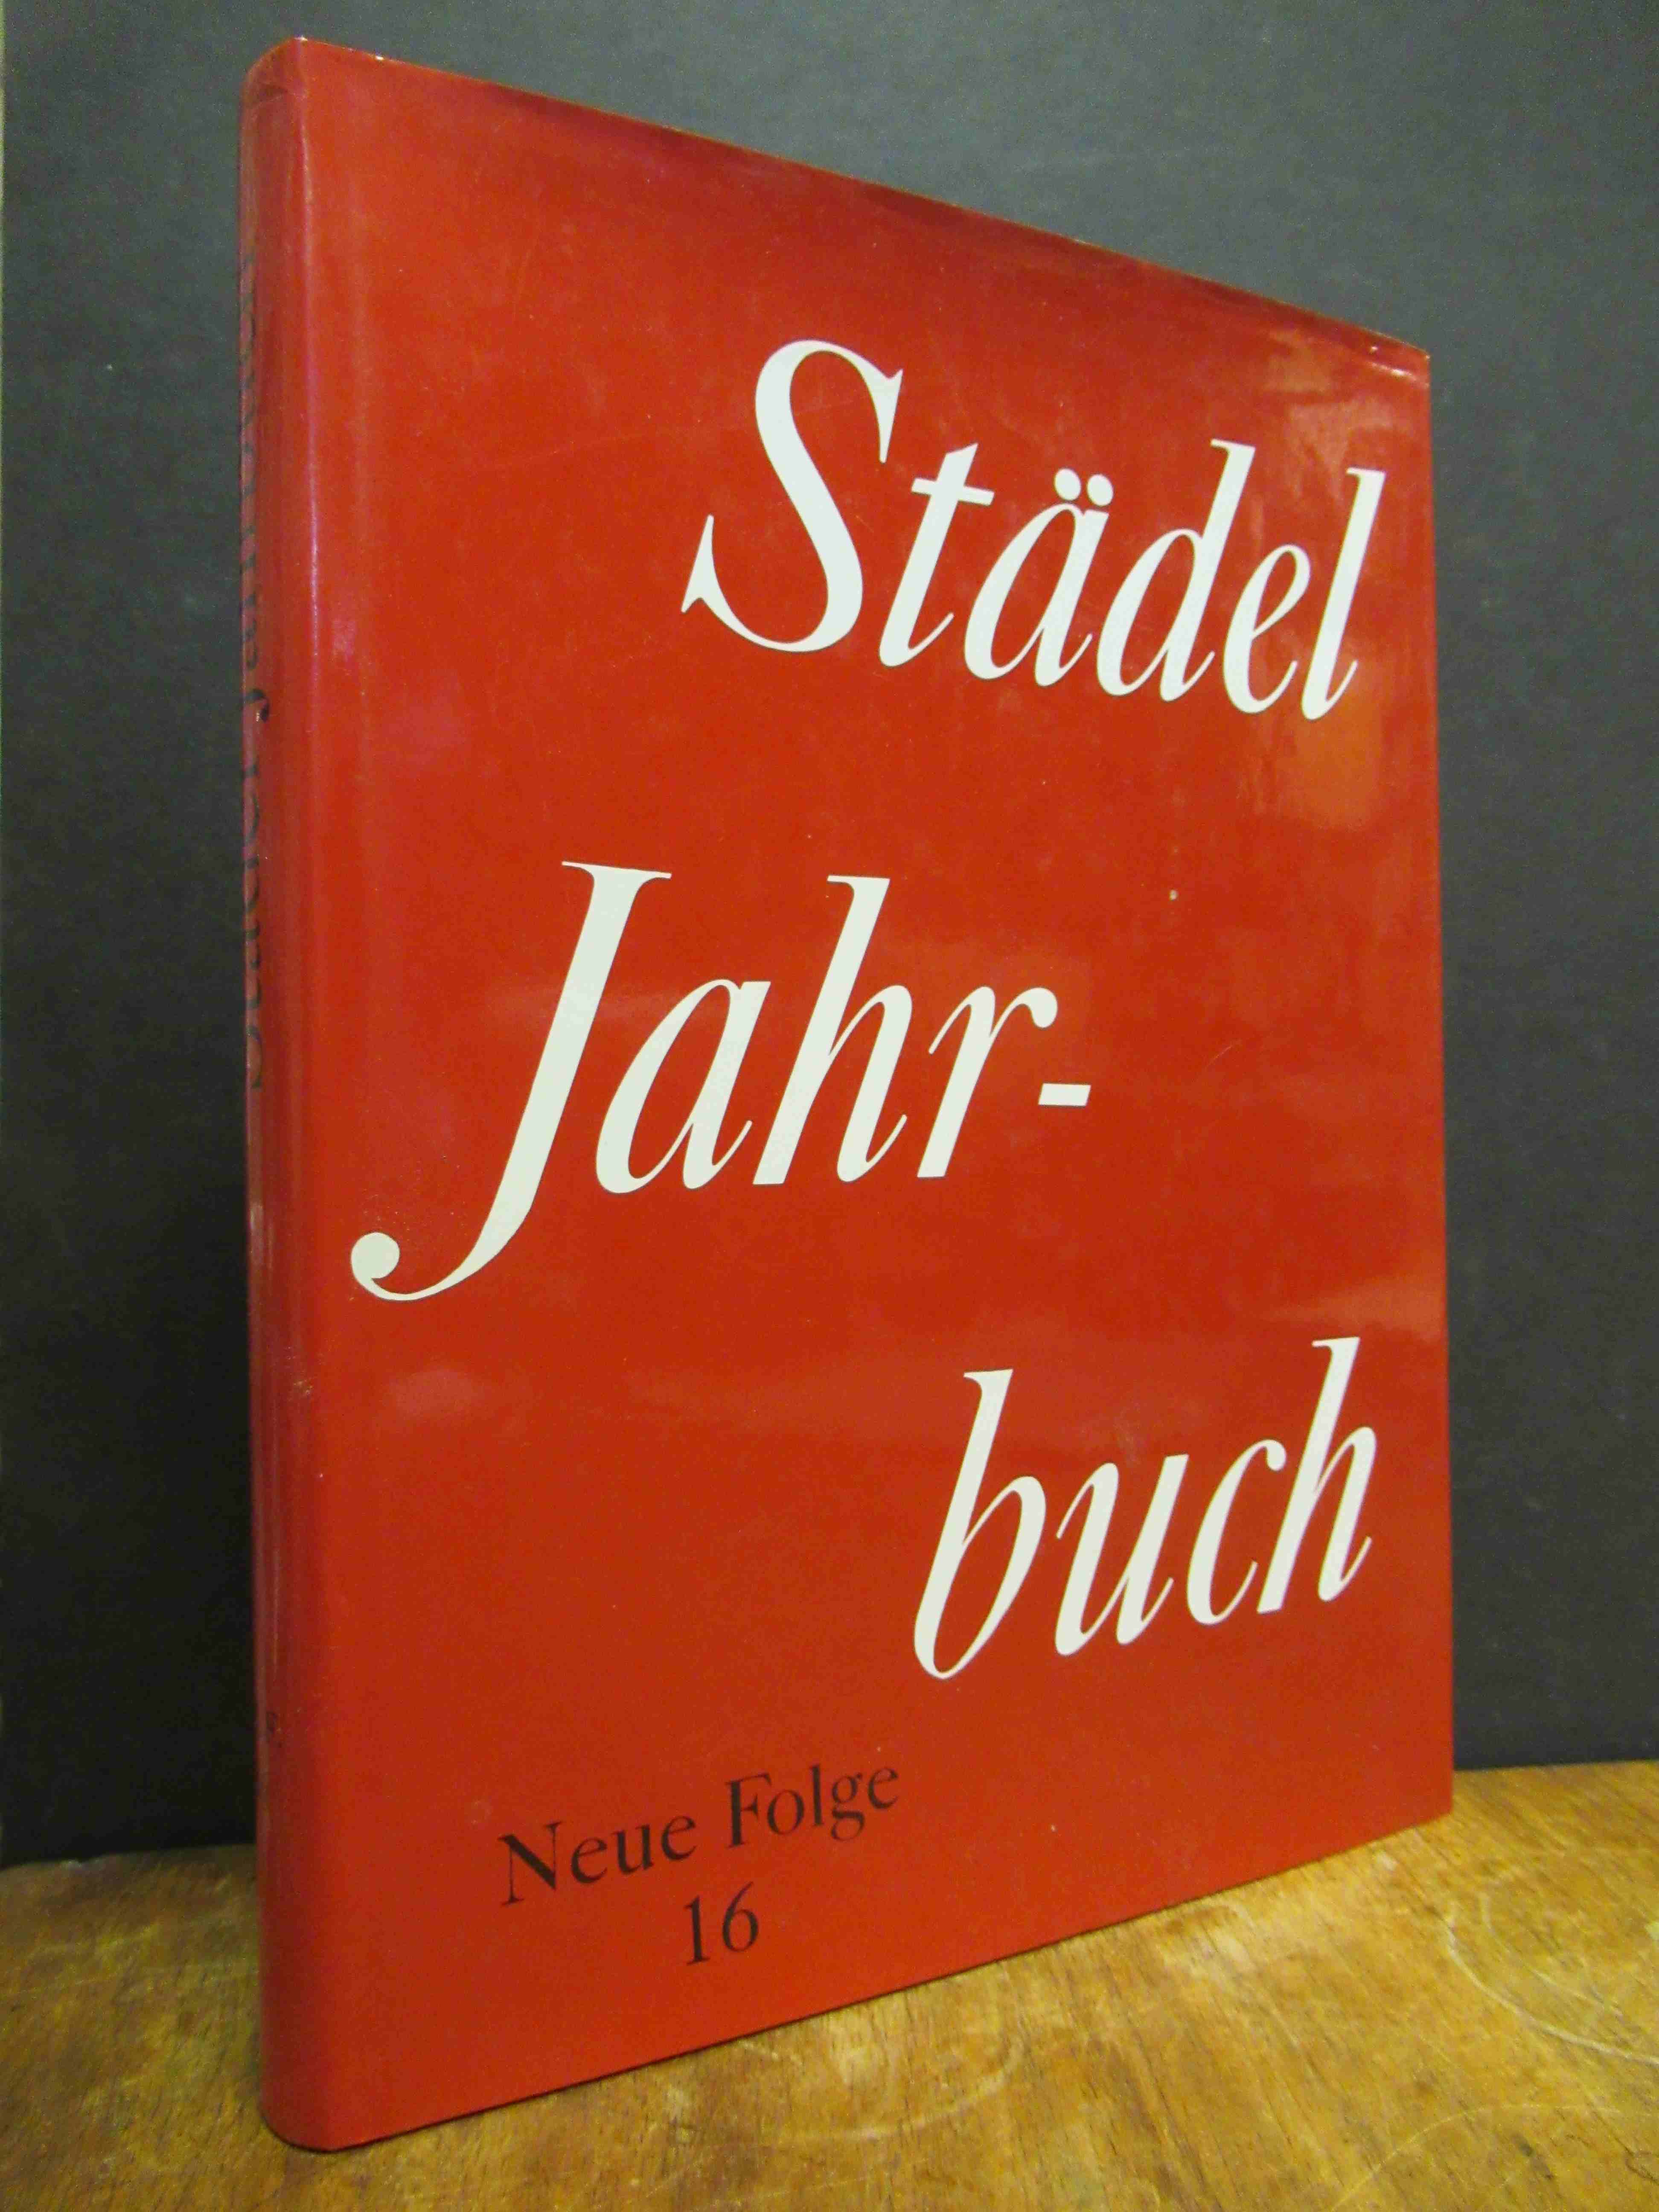 Beck, Städel-Jahrbuch – Neue Folge, Band 16,